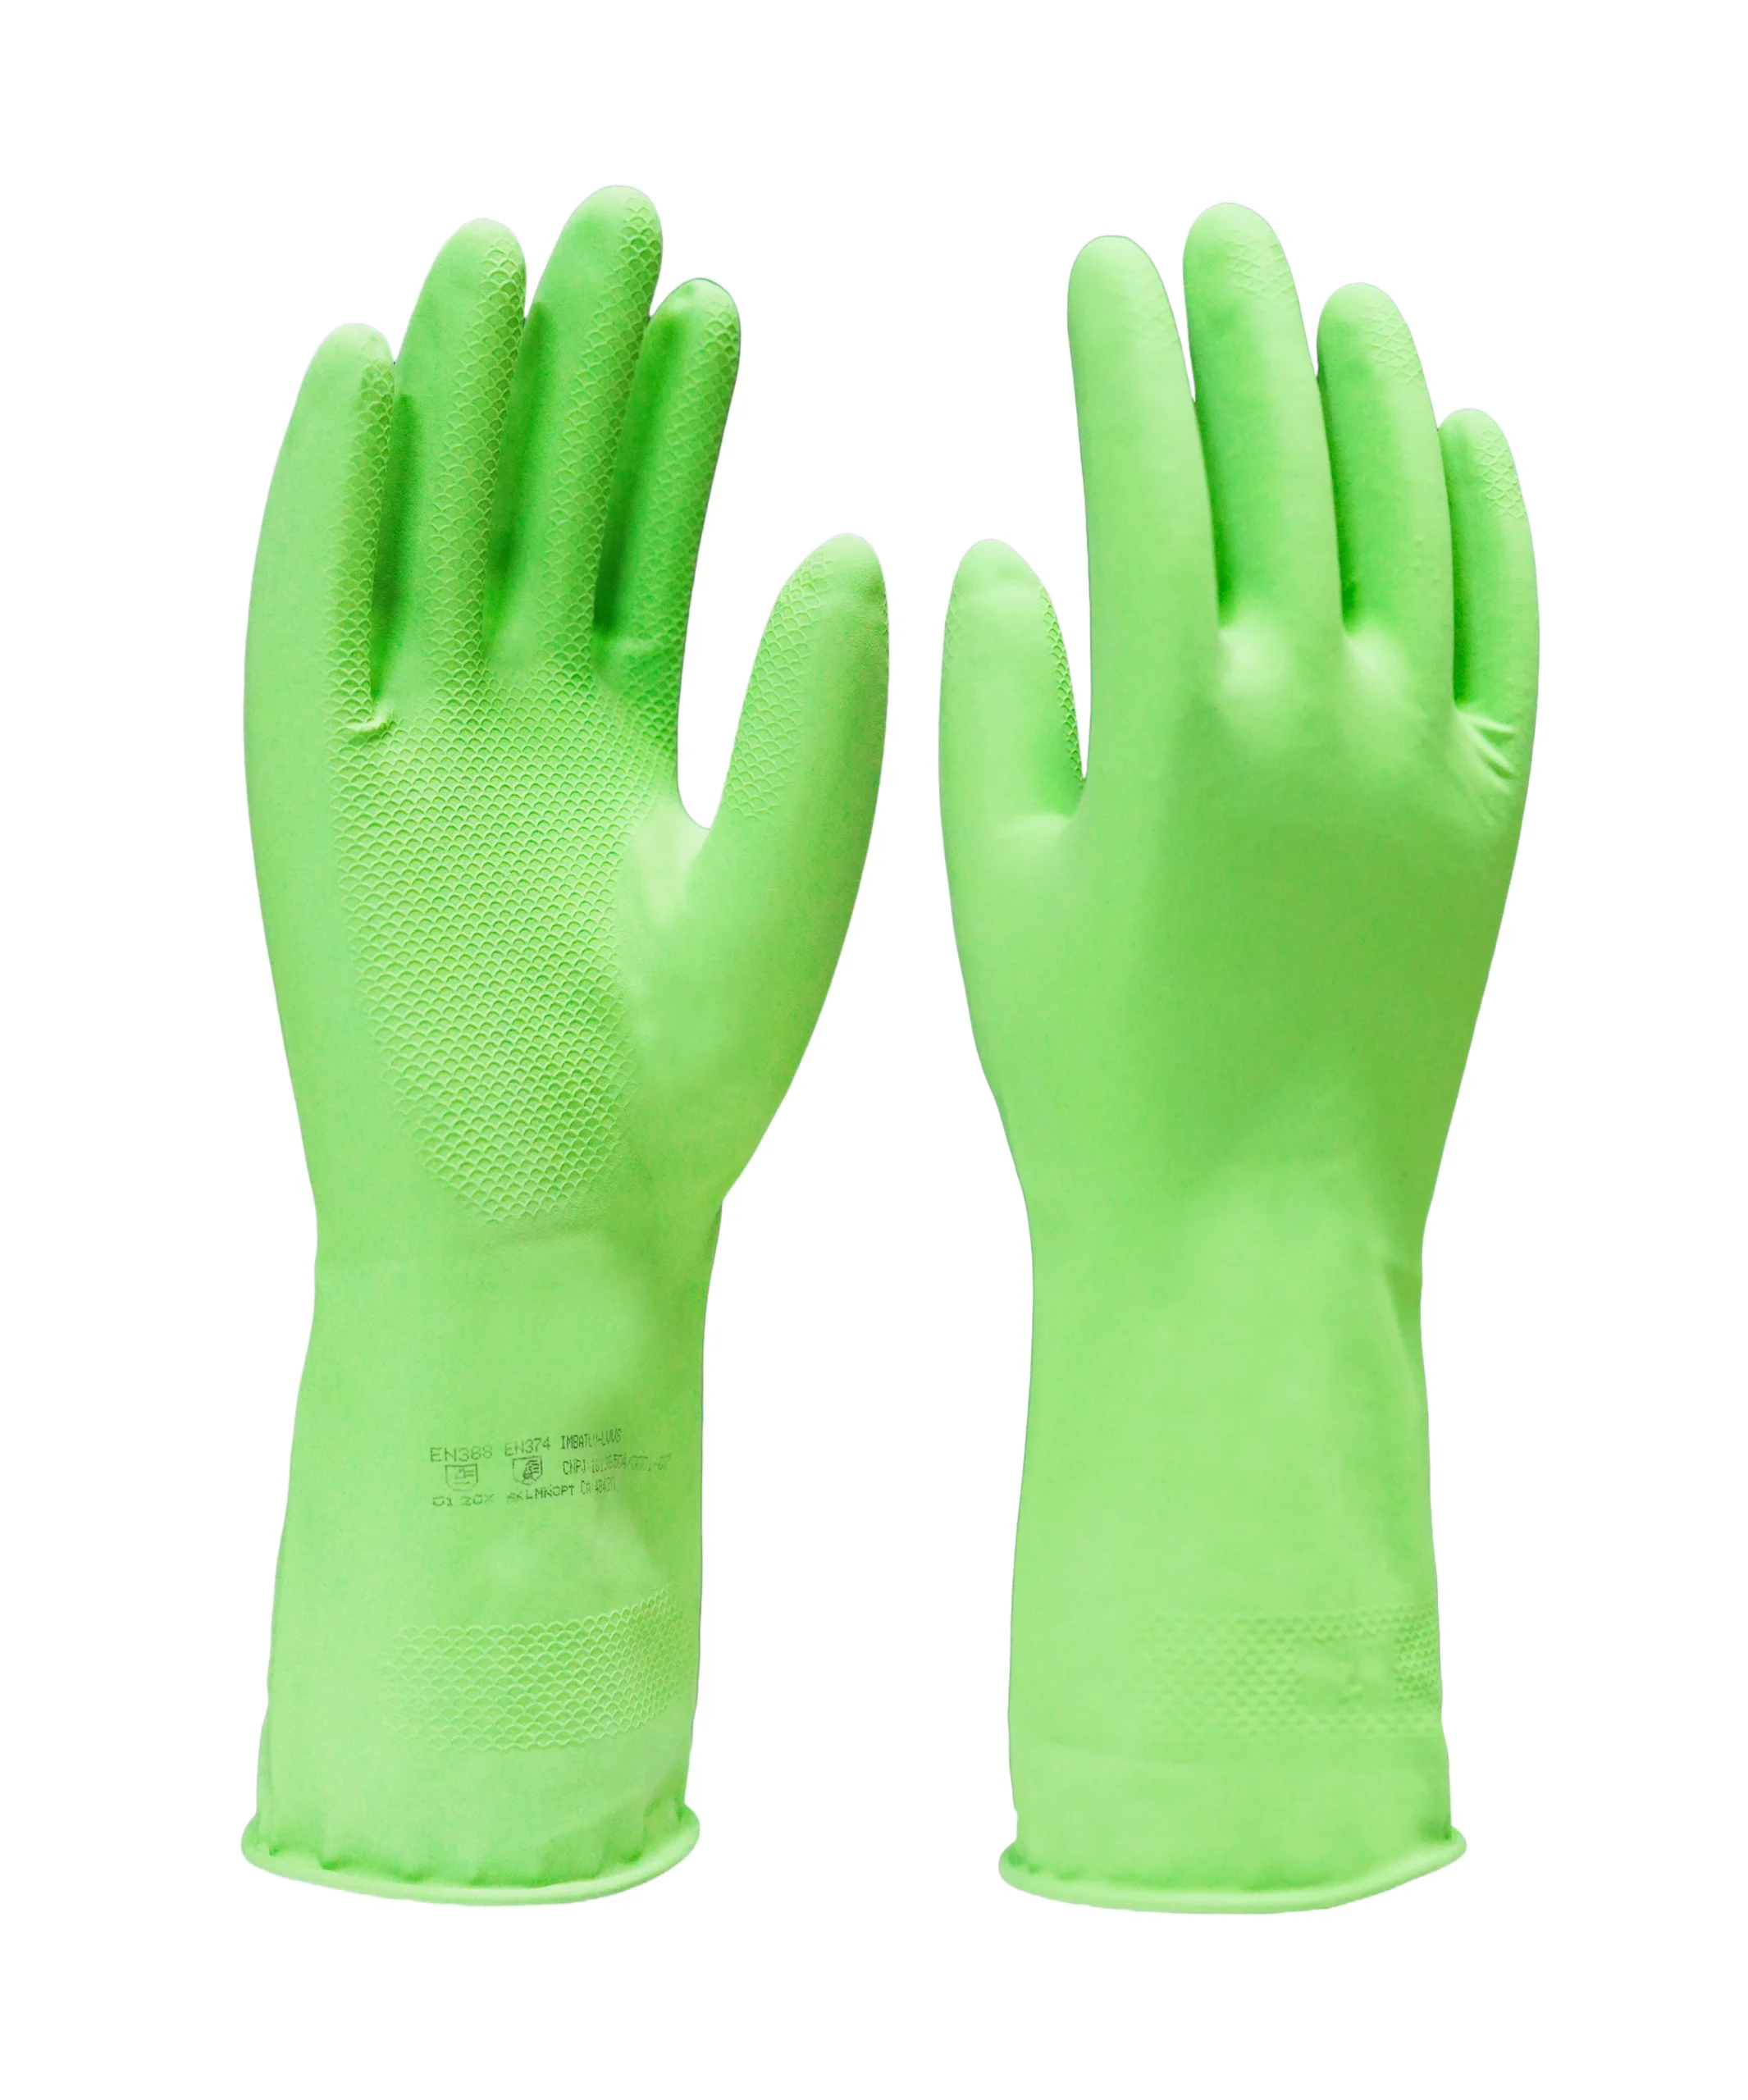 Luva de segurança confeccionada em látex natural na cor verde, revestimento interno em verniz Silver, antiderrapante na palma e face palmar dos dedos. Tamanhos꞉ 7, 8, 9 e 10